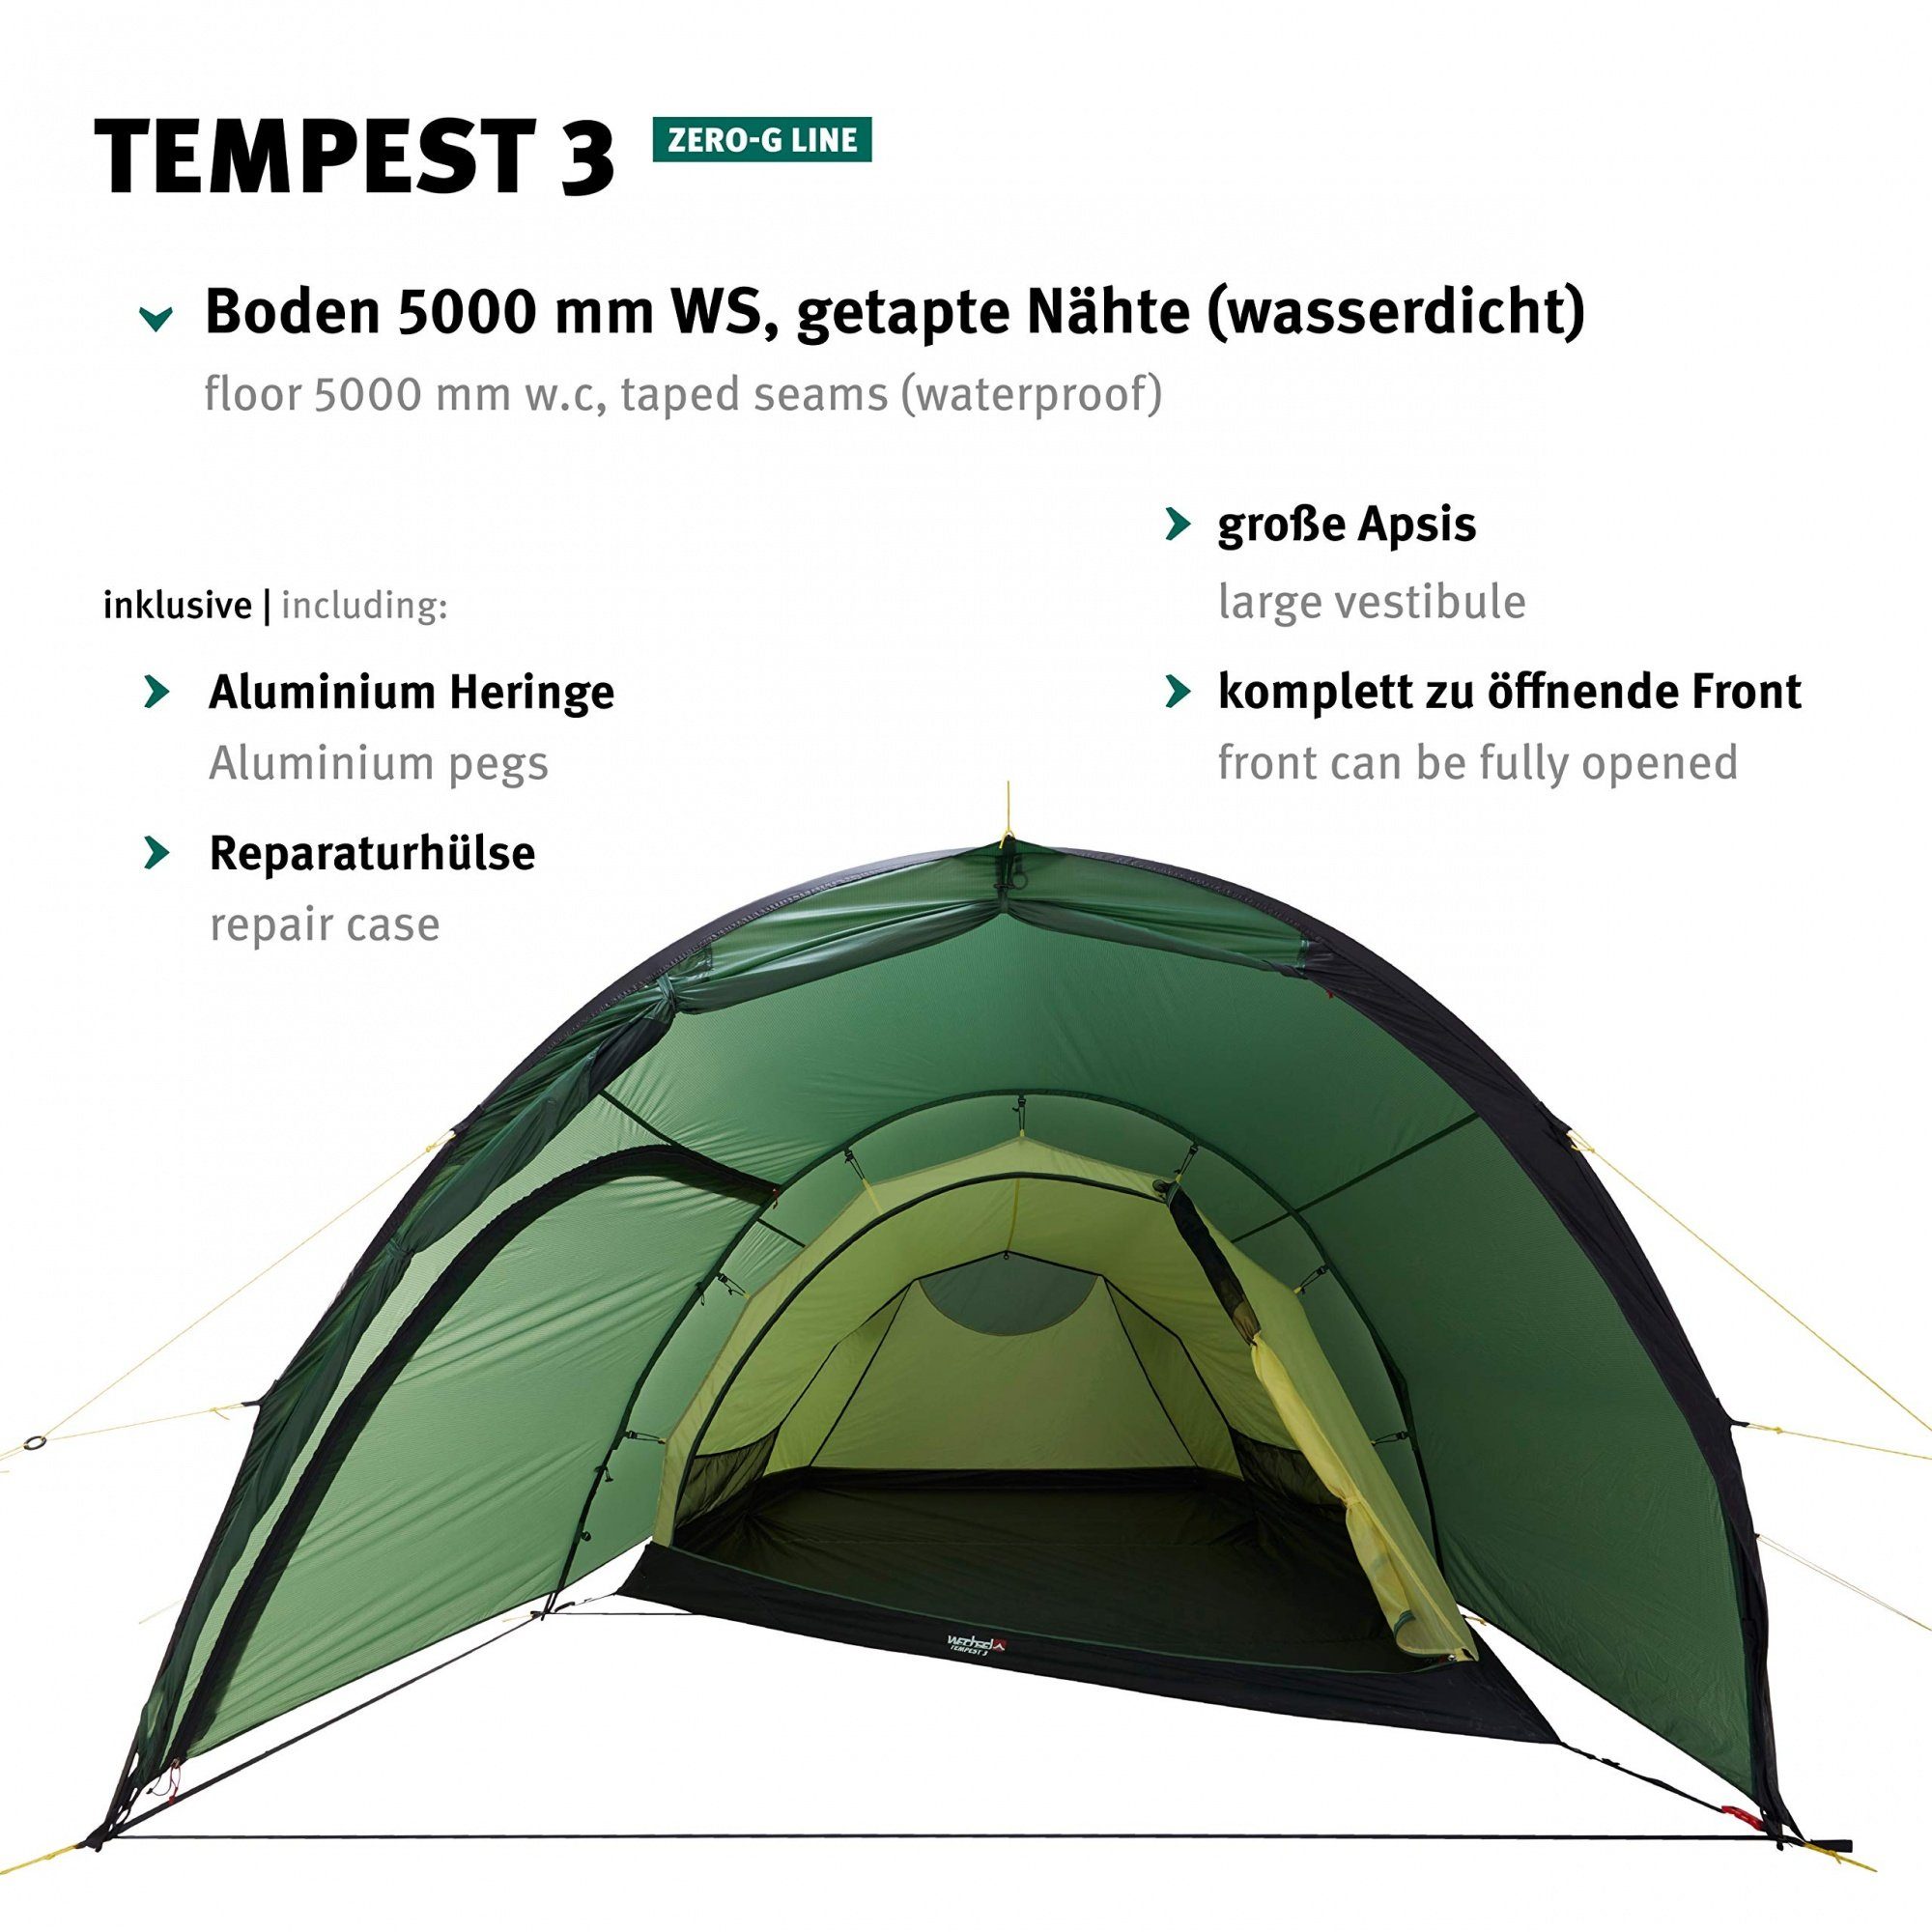 Wechsel Tents Tunnelzelt 3 Großer Tempest Innenraum 3 3-Personen, (3-Jahreszeiten), Zero-G - Personen